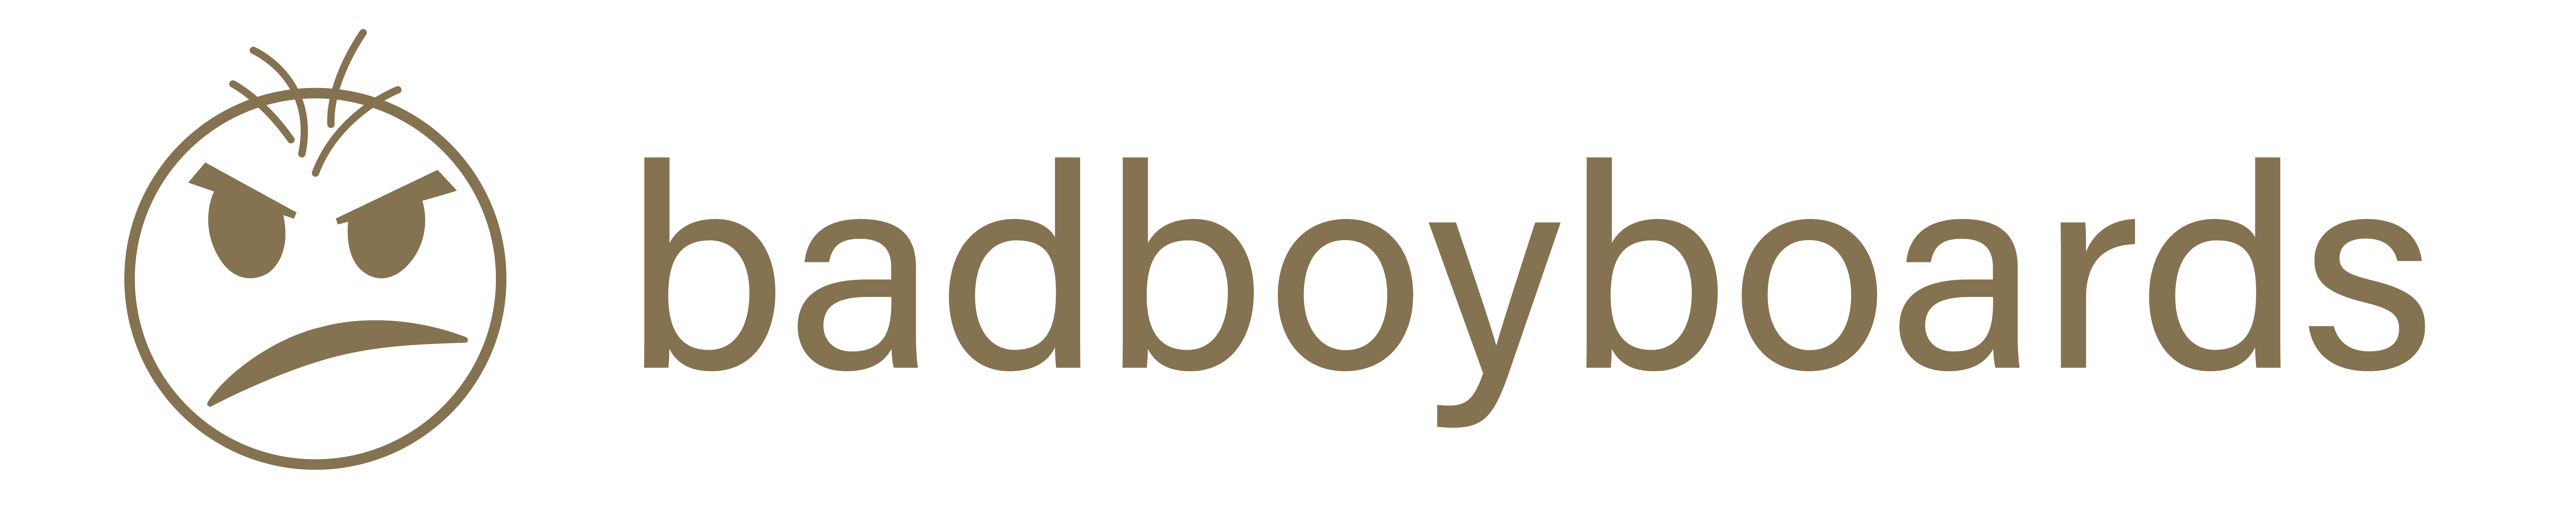 badboyboards